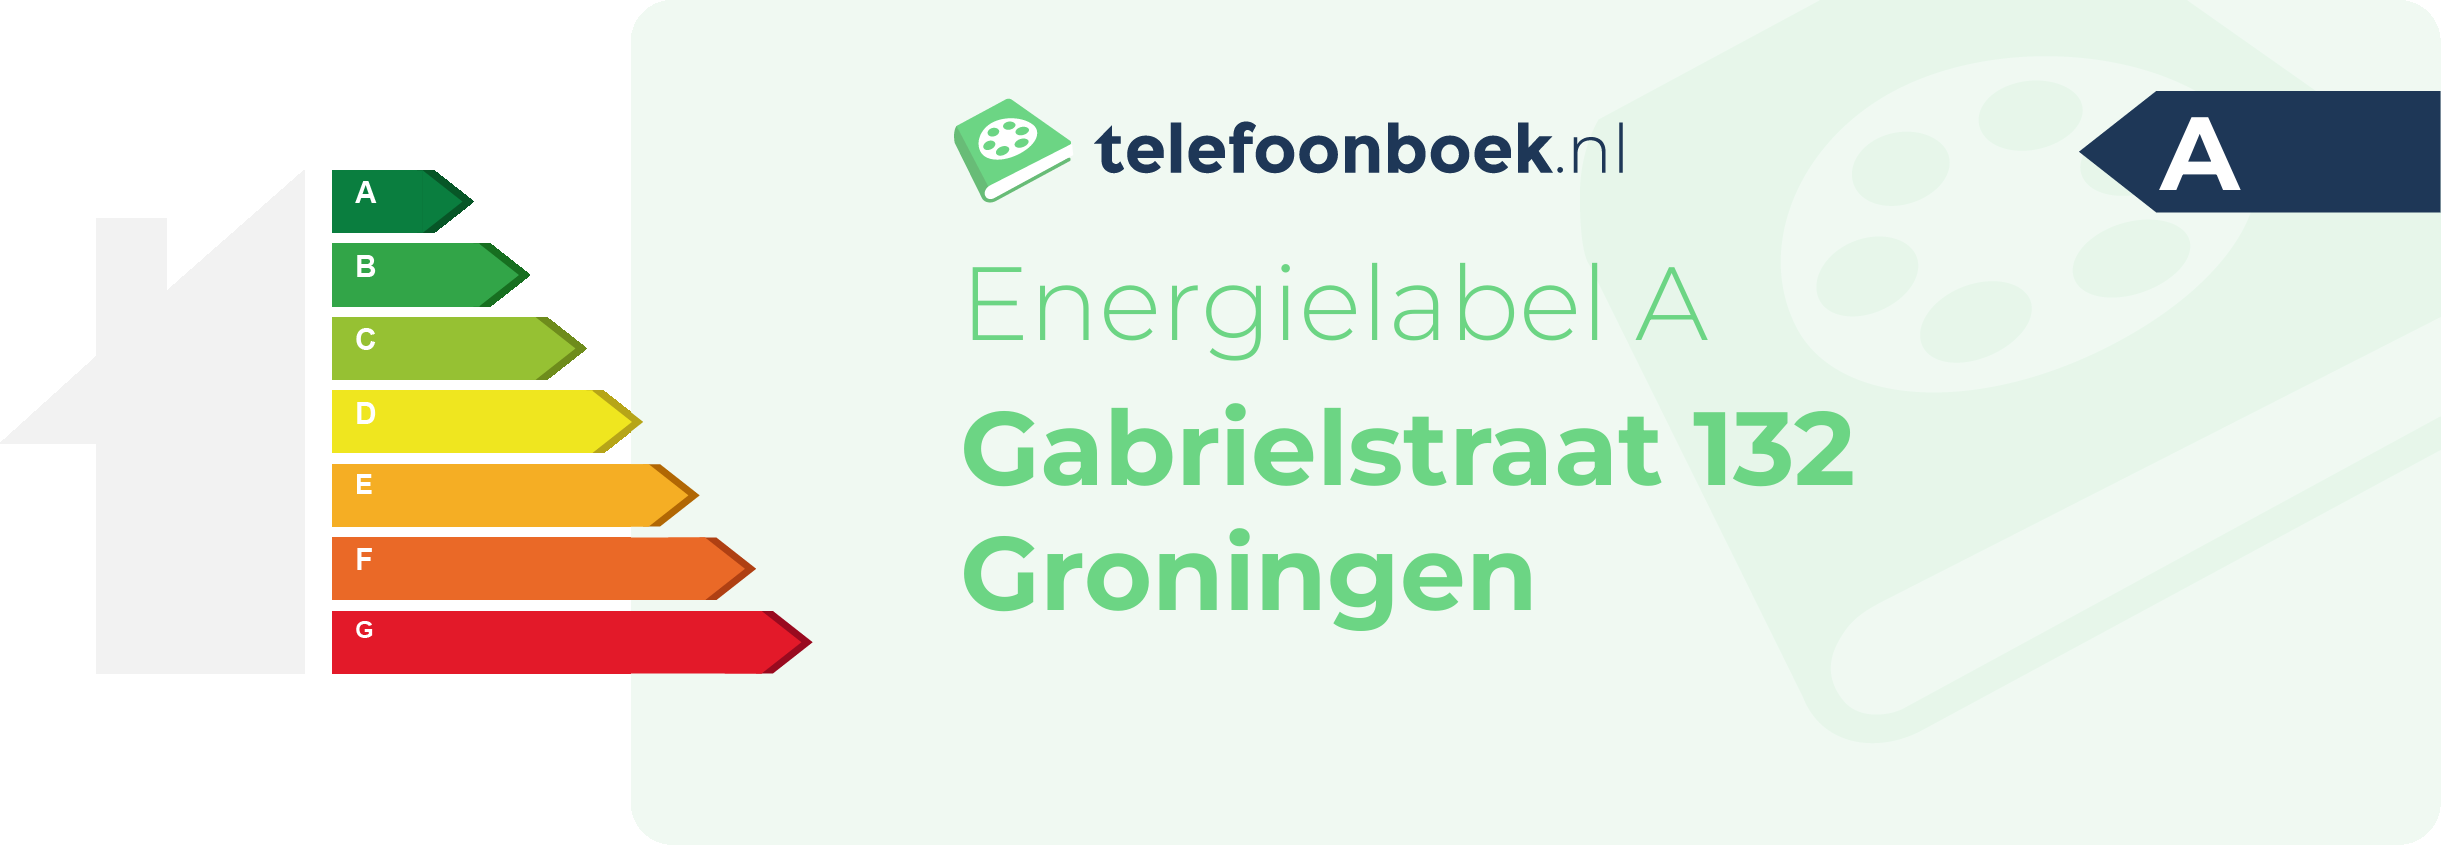 Energielabel Gabrielstraat 132 Groningen